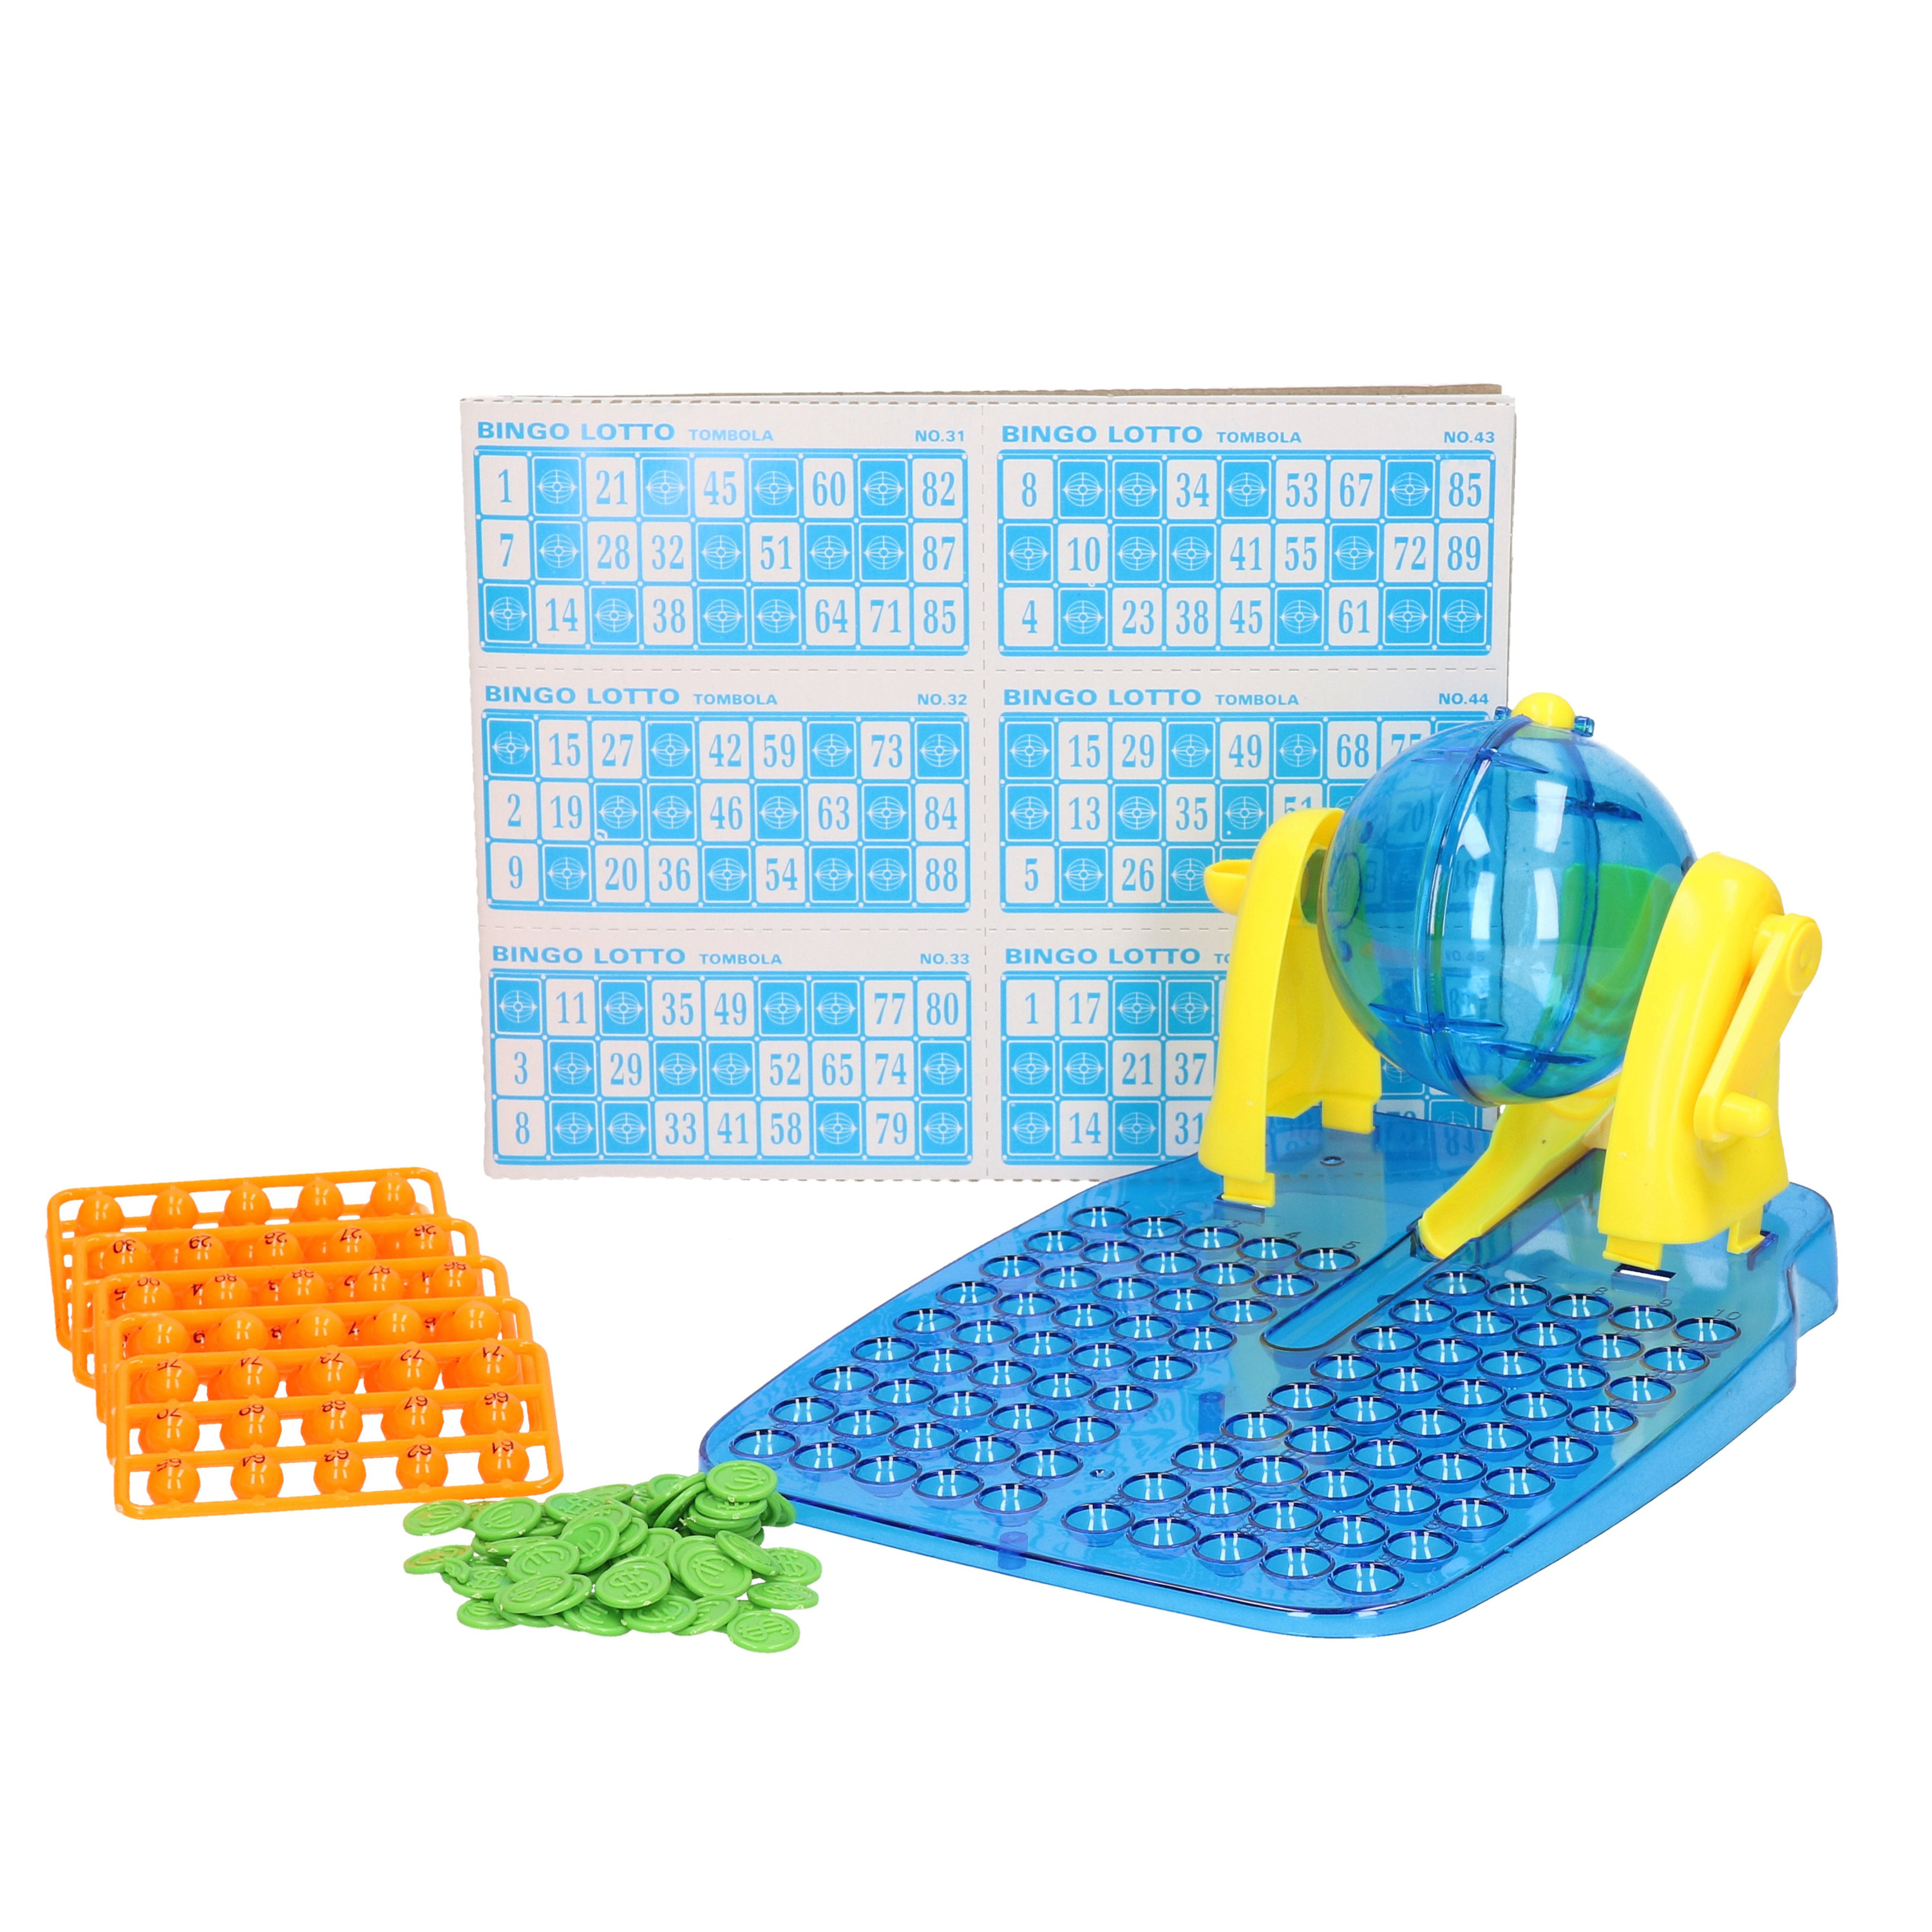 Bingo spel blauw/geel complete set nummers 1-90 met molen en bingokaarten